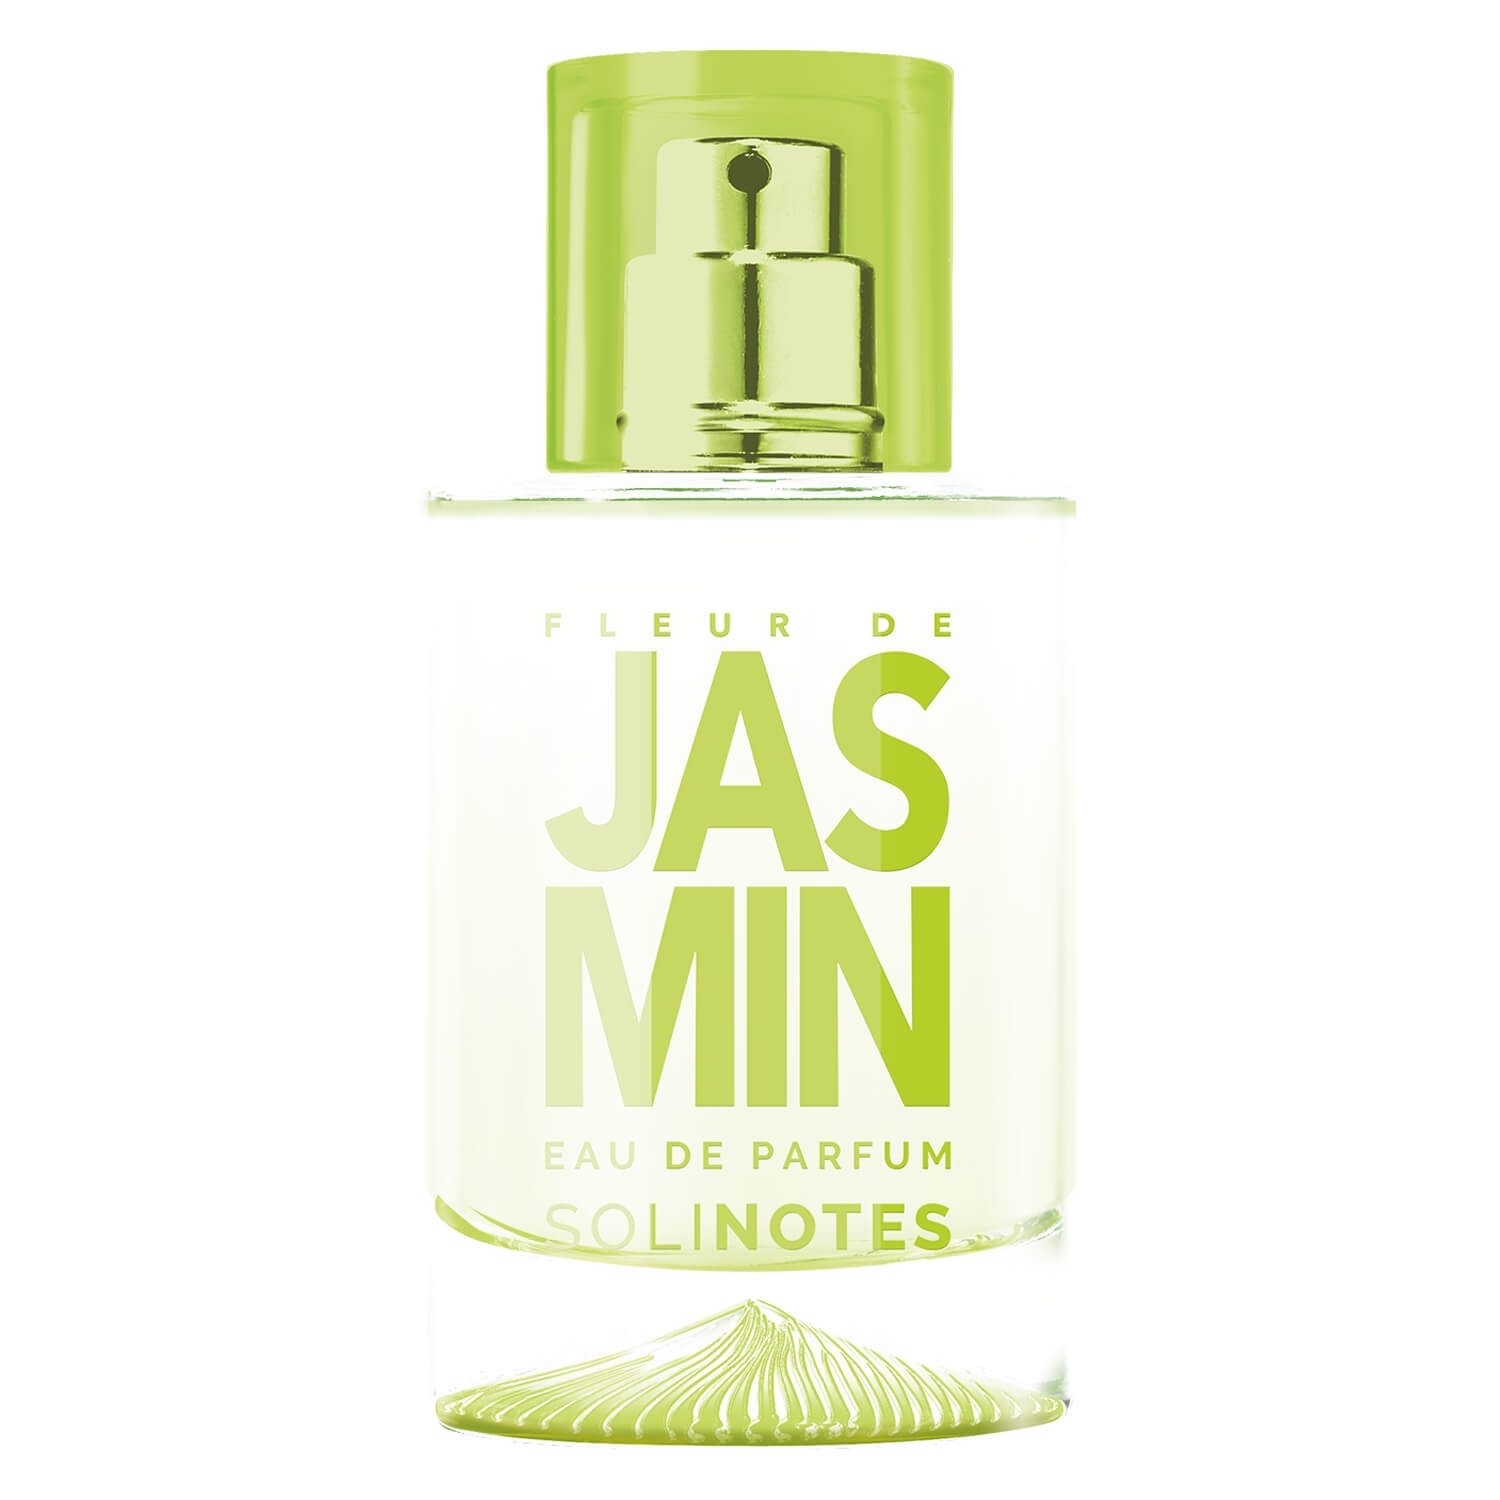 Produktbild von Solinotes - Fleur De Jasmin Eau De Parfum